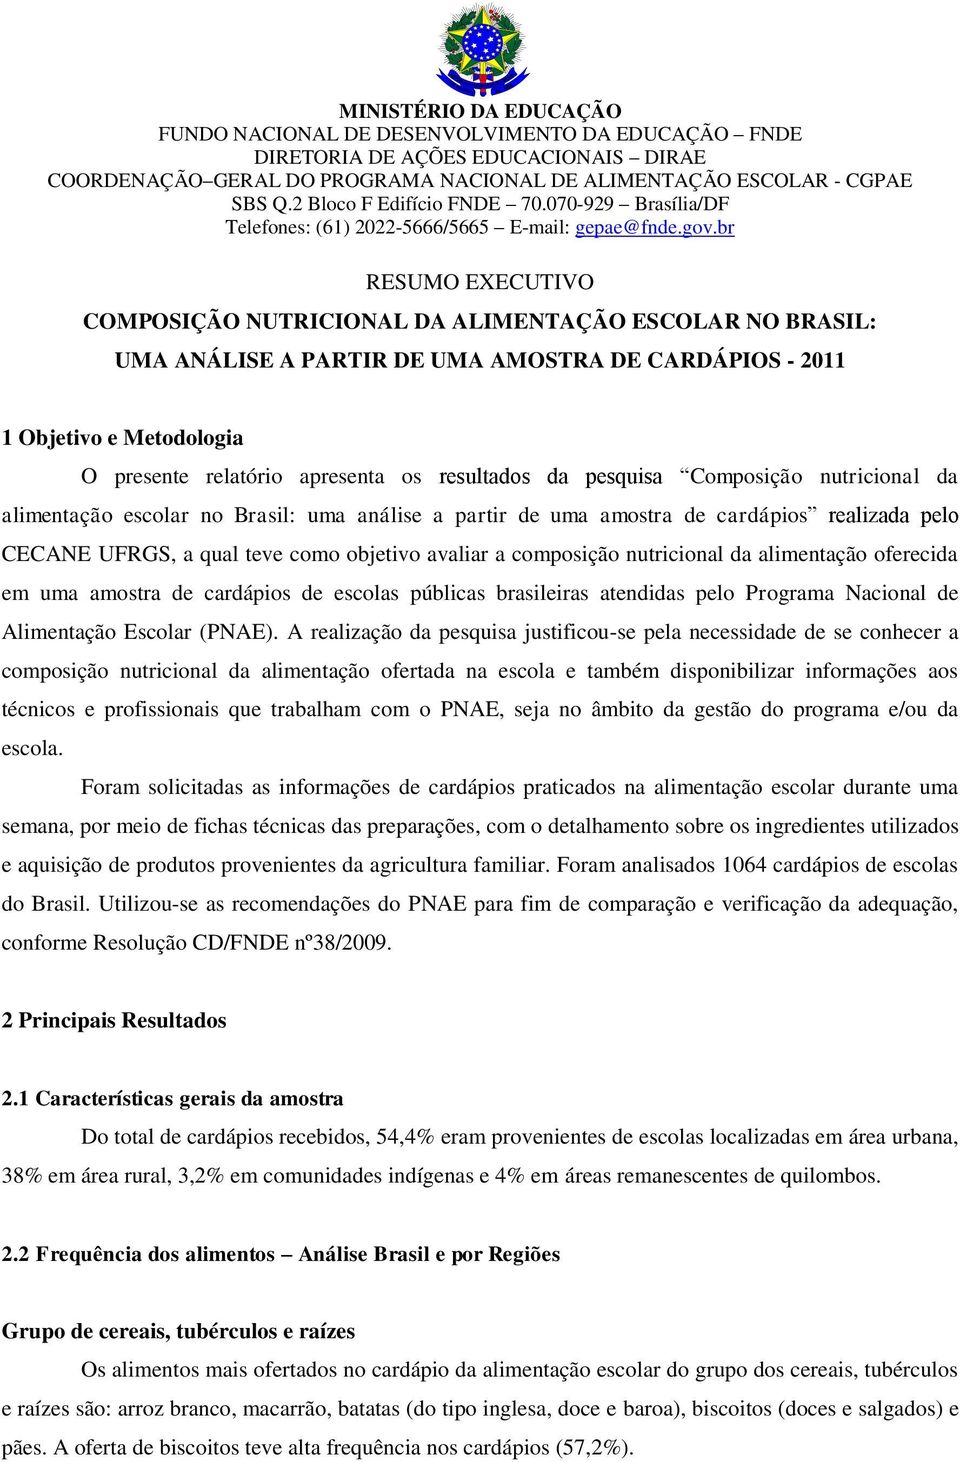 nutricional da alimentação oferecida em uma amostra de cardápios de escolas públicas brasileiras atendidas pelo Programa Nacional de Alimentação Escolar (PNAE).